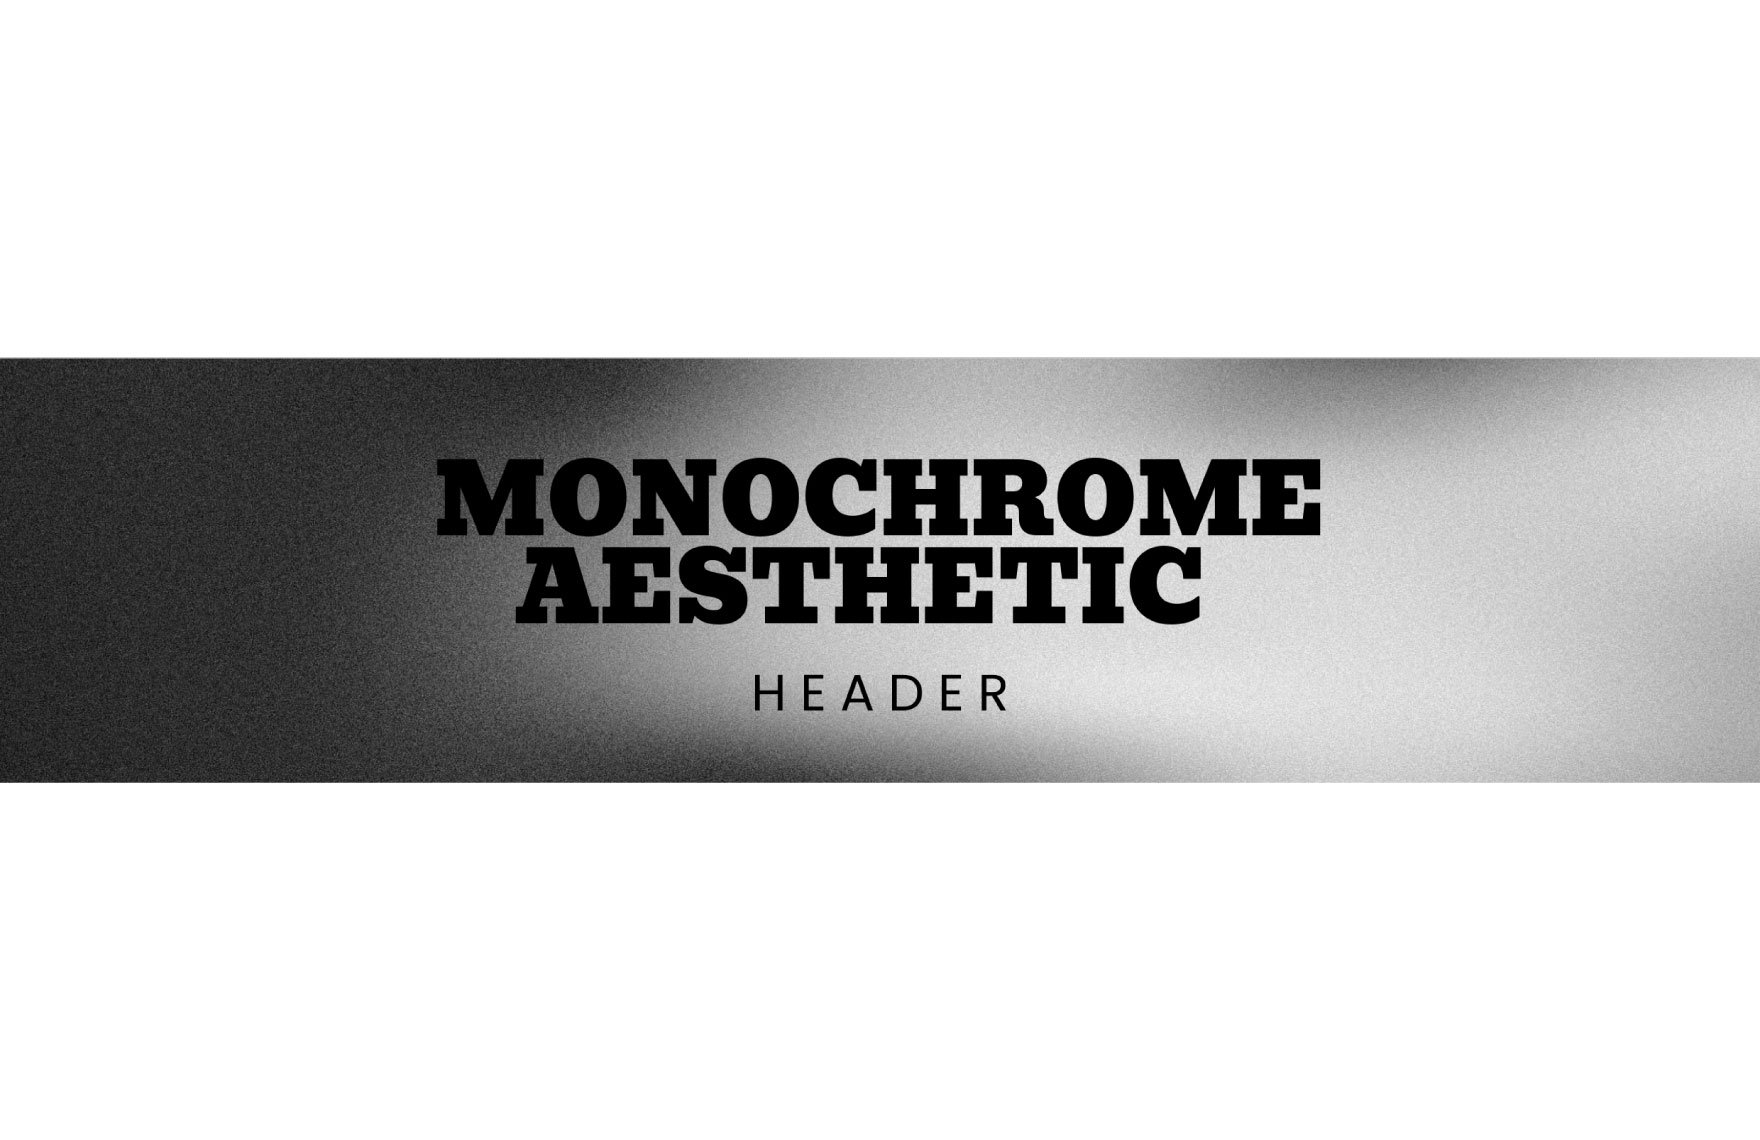 Monochrome Aesthetic Header